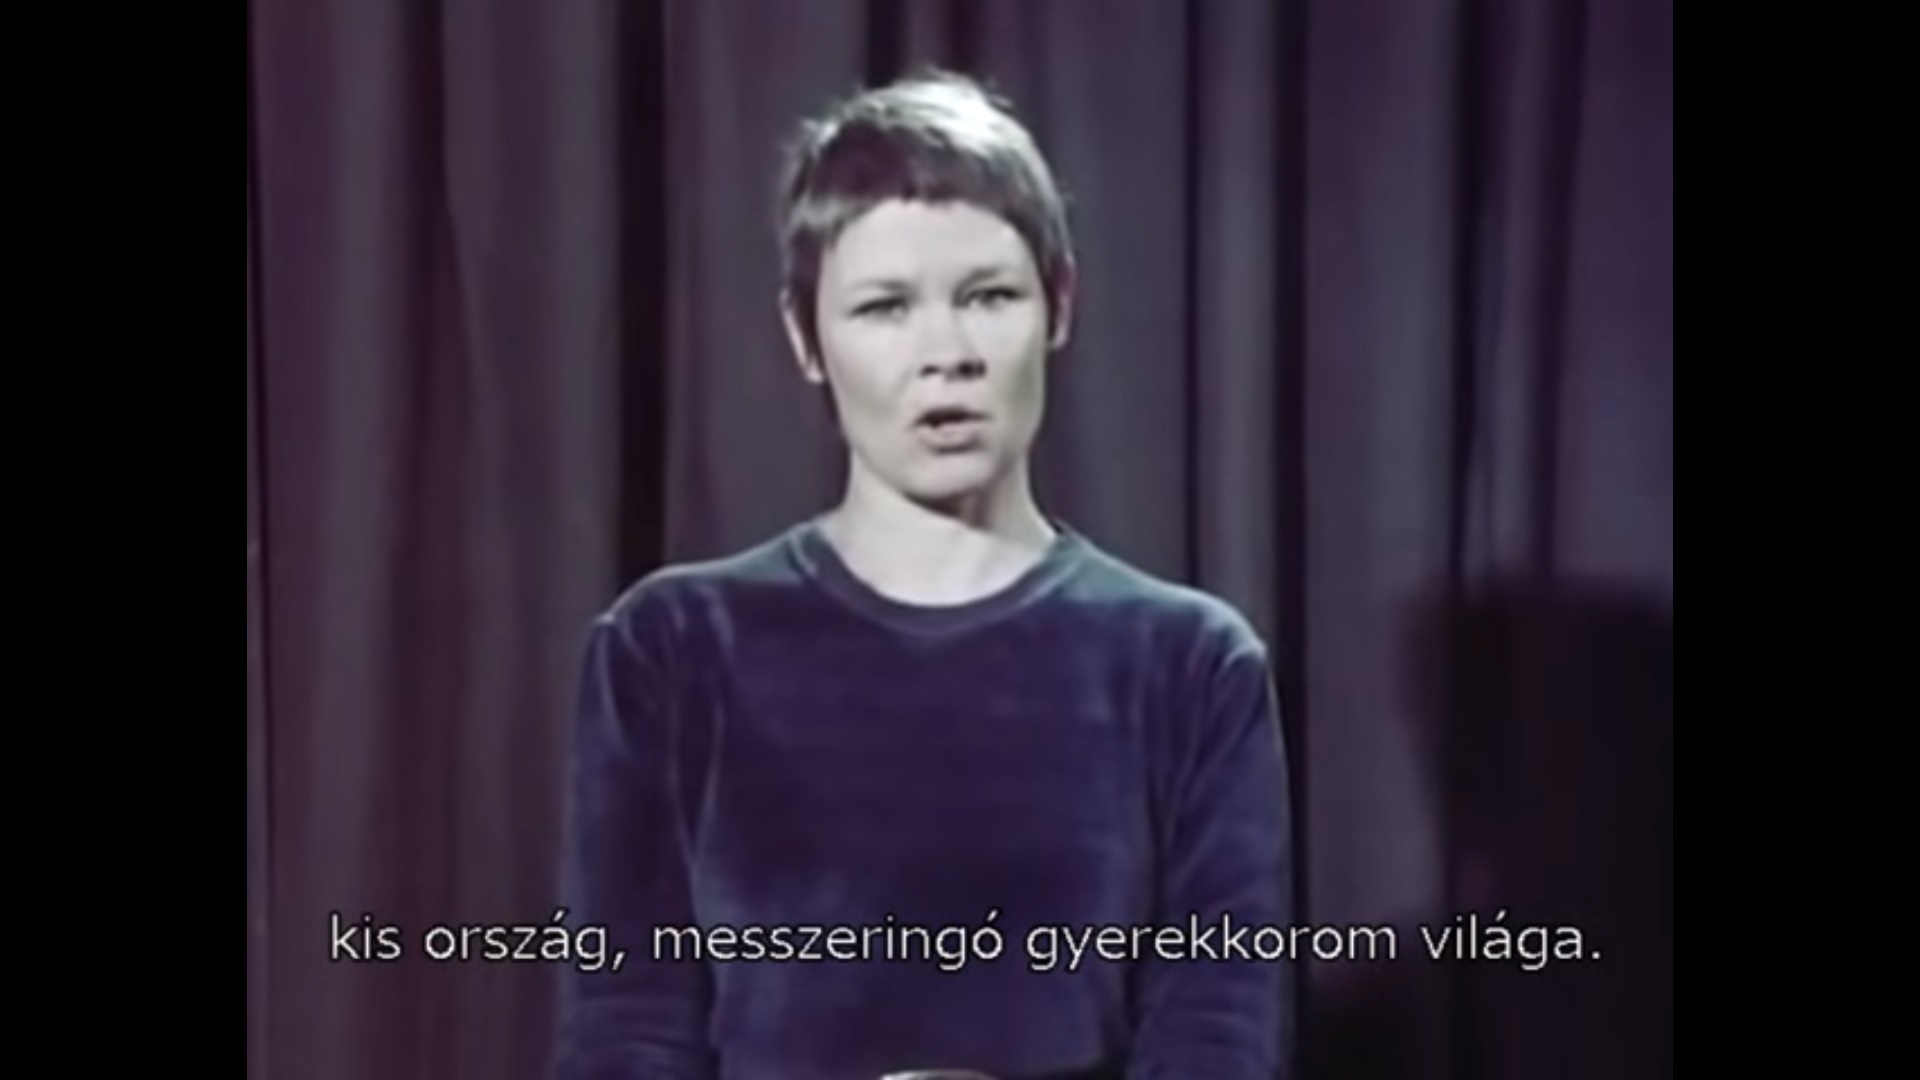 الممثلة الإنجليزية جودي دينش تقرأ فيديو Miklós Radnóti - فيديو